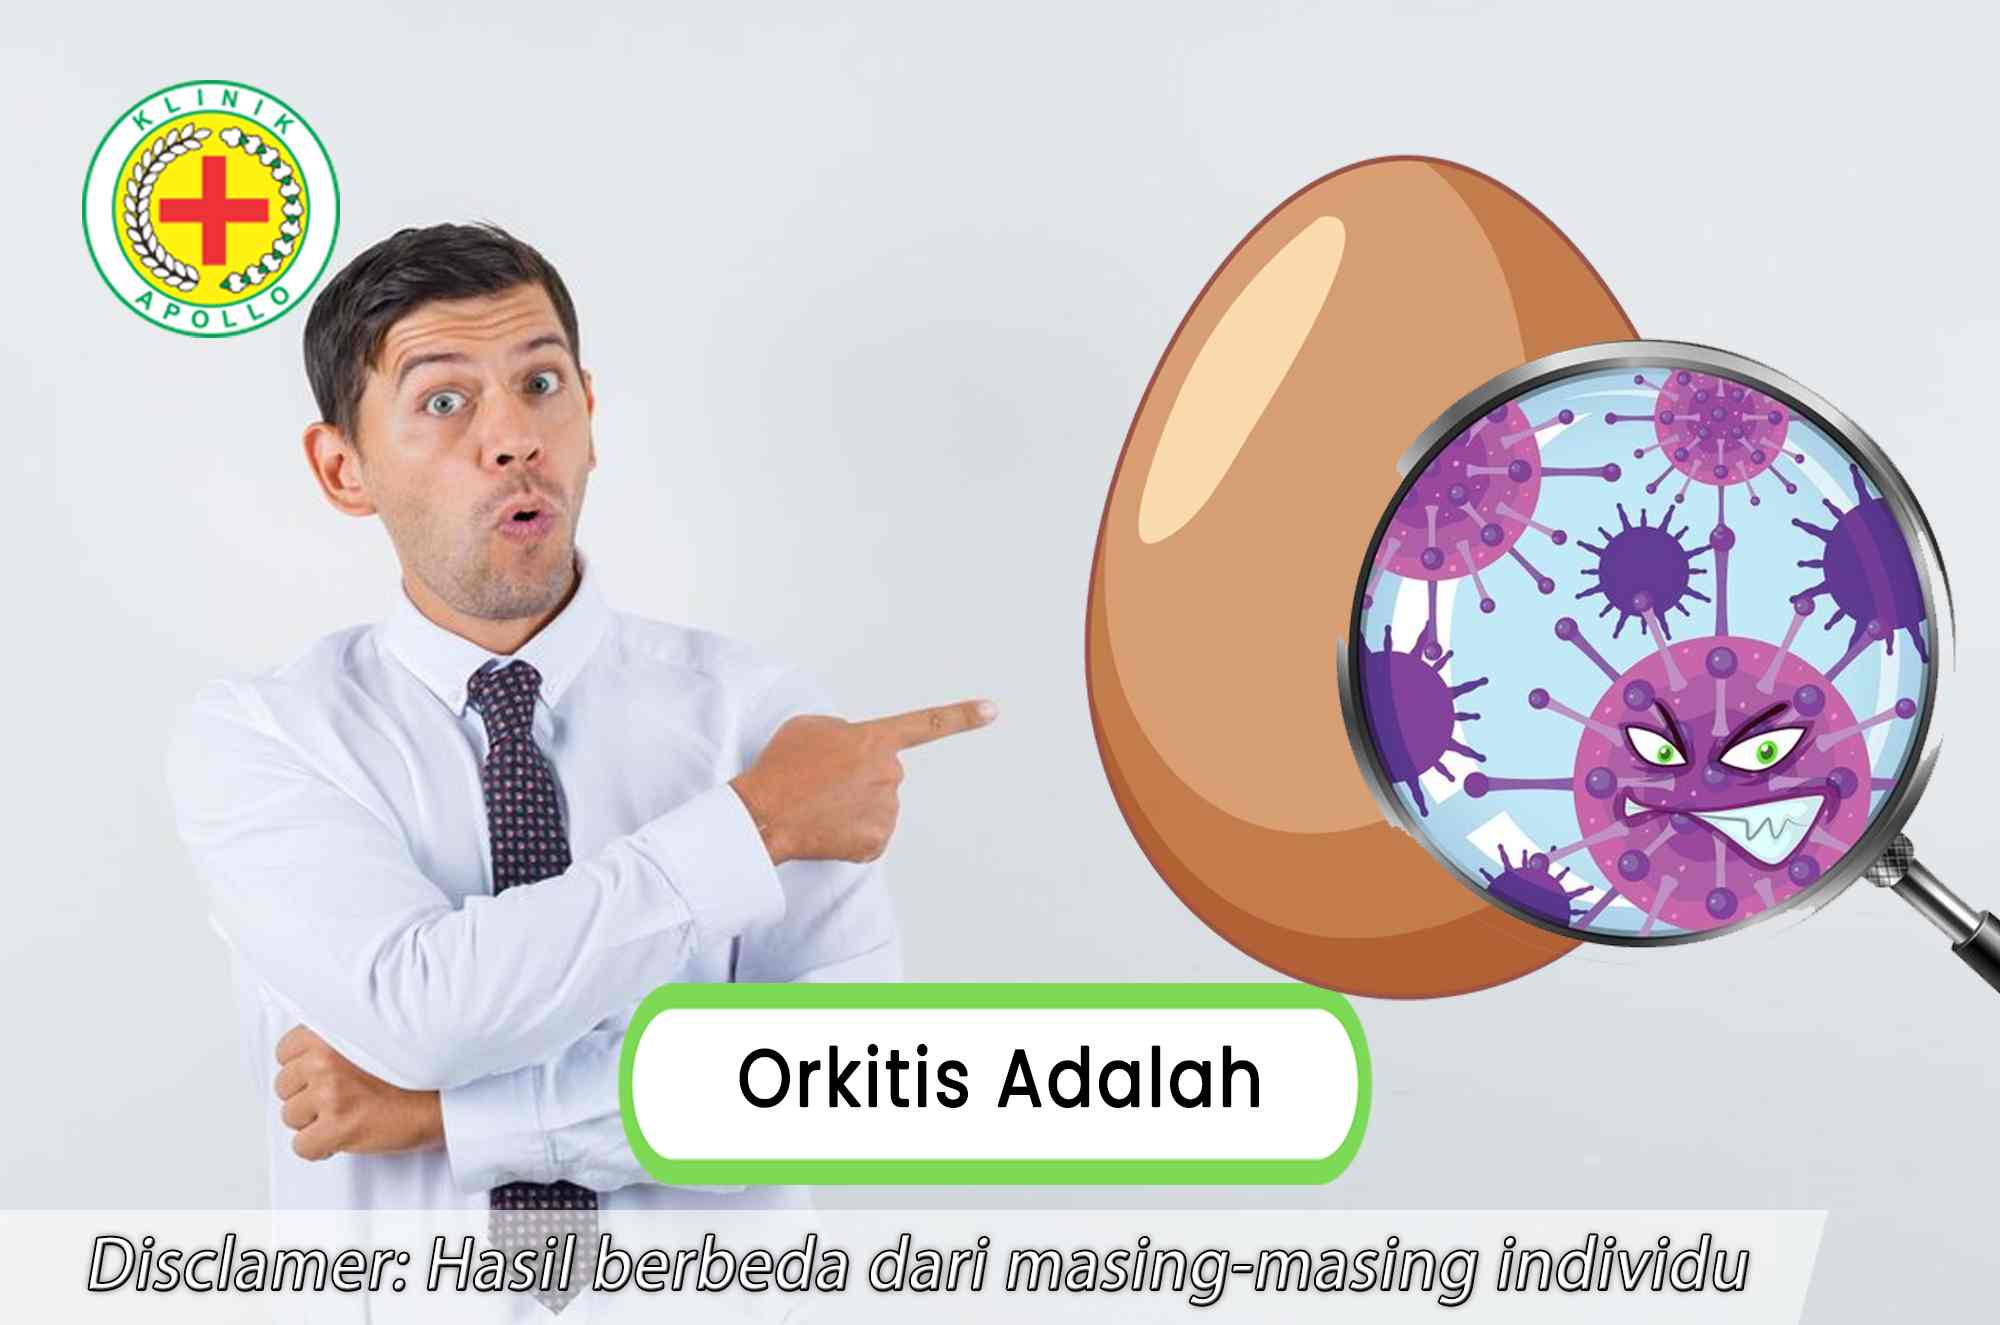 Orkitis adalah salah satu peradangan testis pada pria dan membutuhkan penanganan.